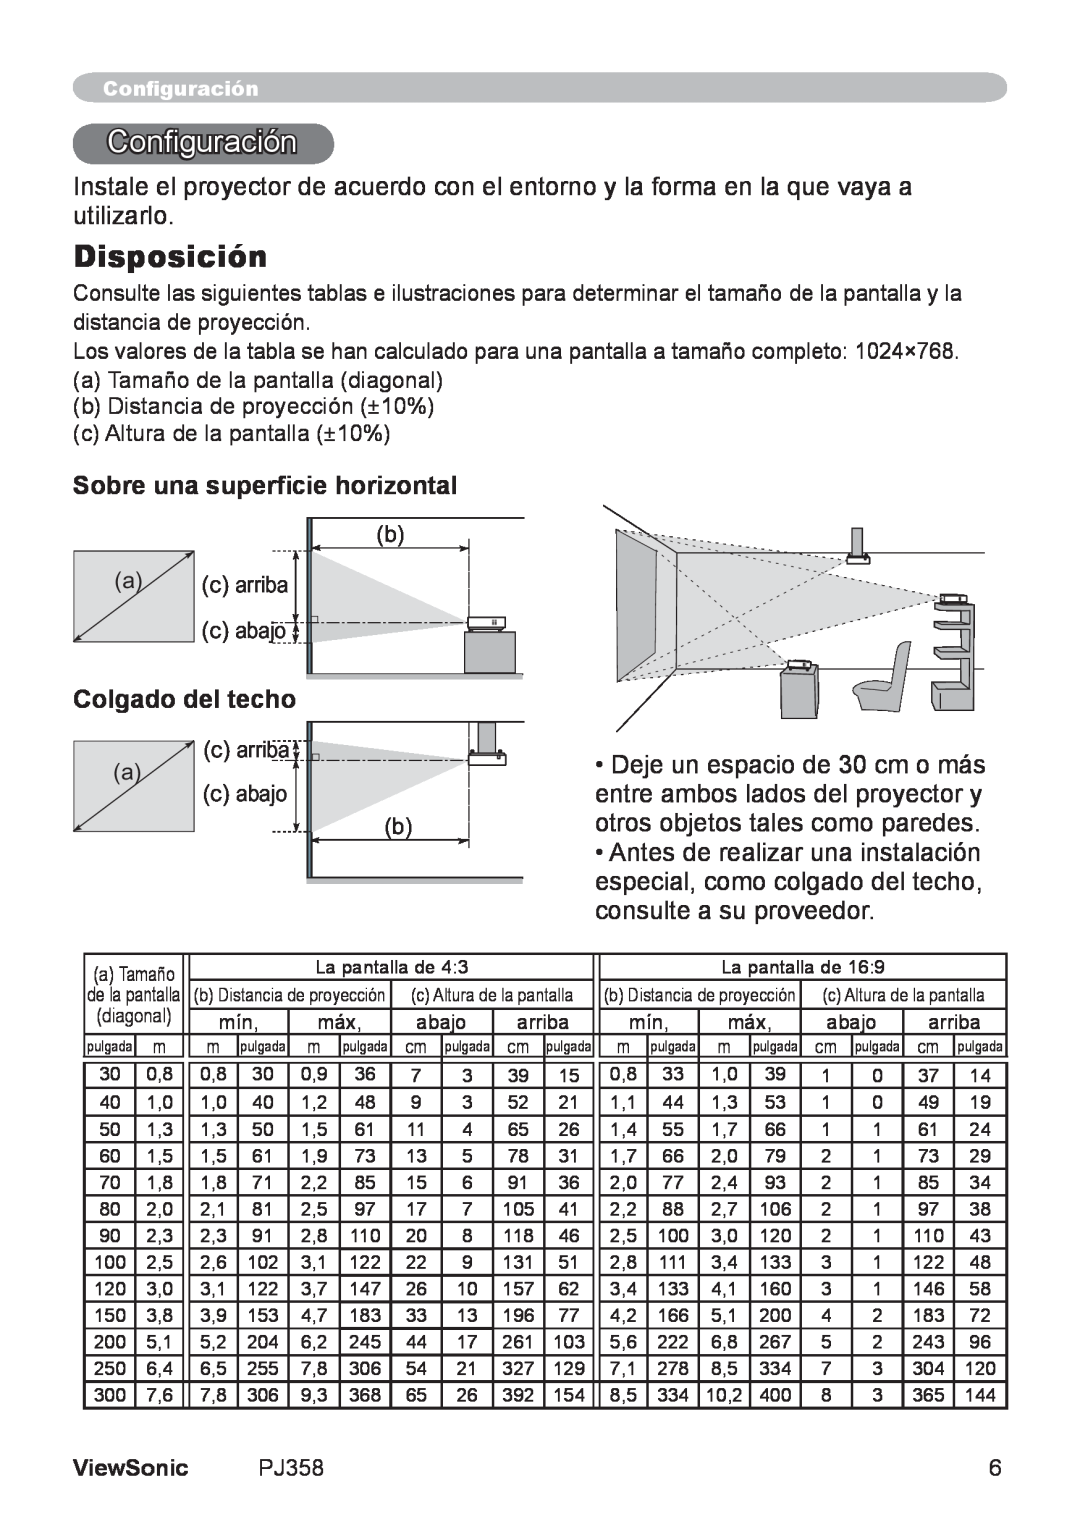 ViewSonic PJ358, VS11611 manual Configuración, Disposición, Sobre una superficie horizontal, Colgado del techo 